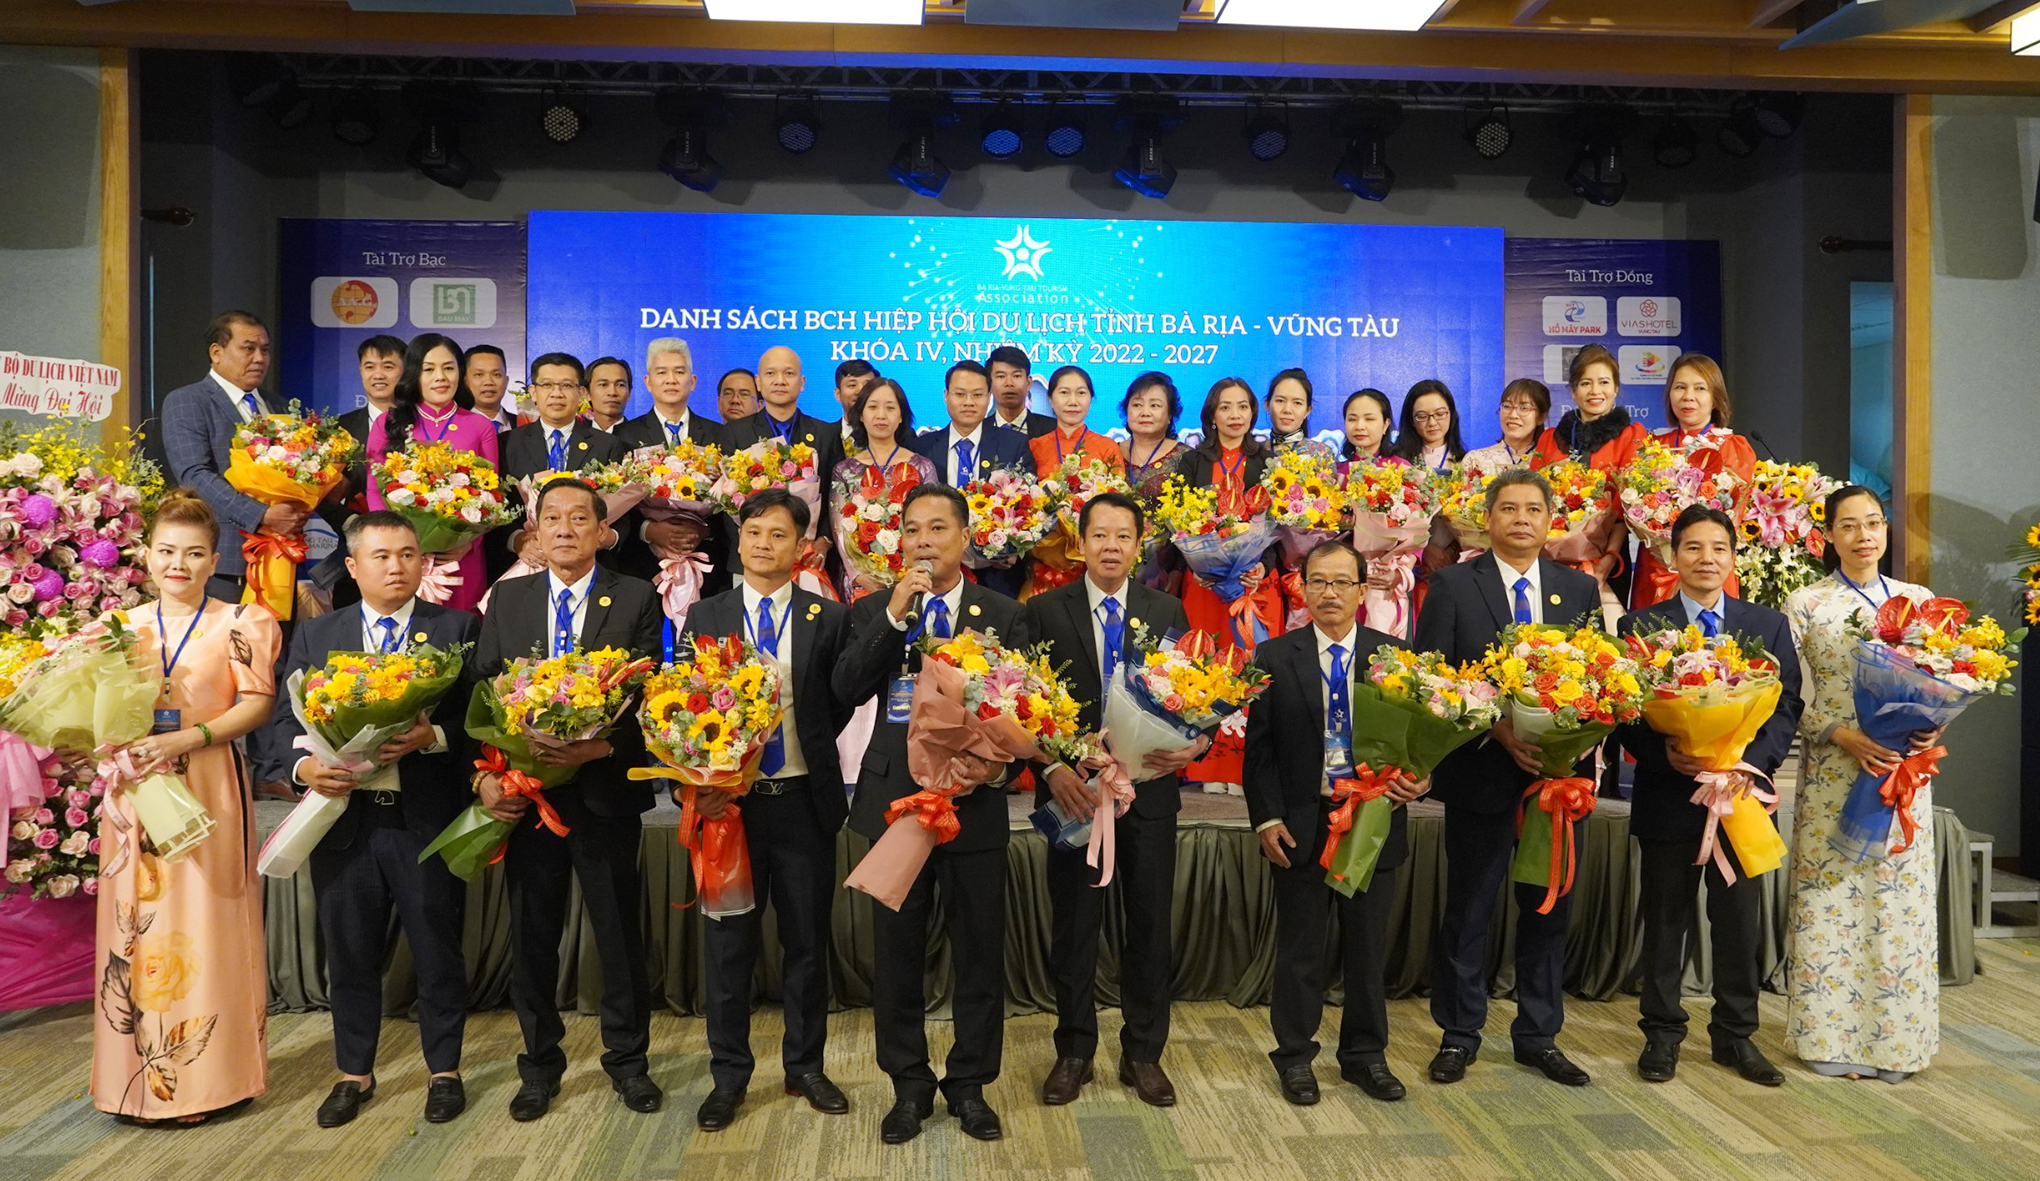 BCH Hiệp hội Du lịch tỉnh Bà Rịa-Vũng Tàu nhiệm kỳ 2022-2027 ra mắt